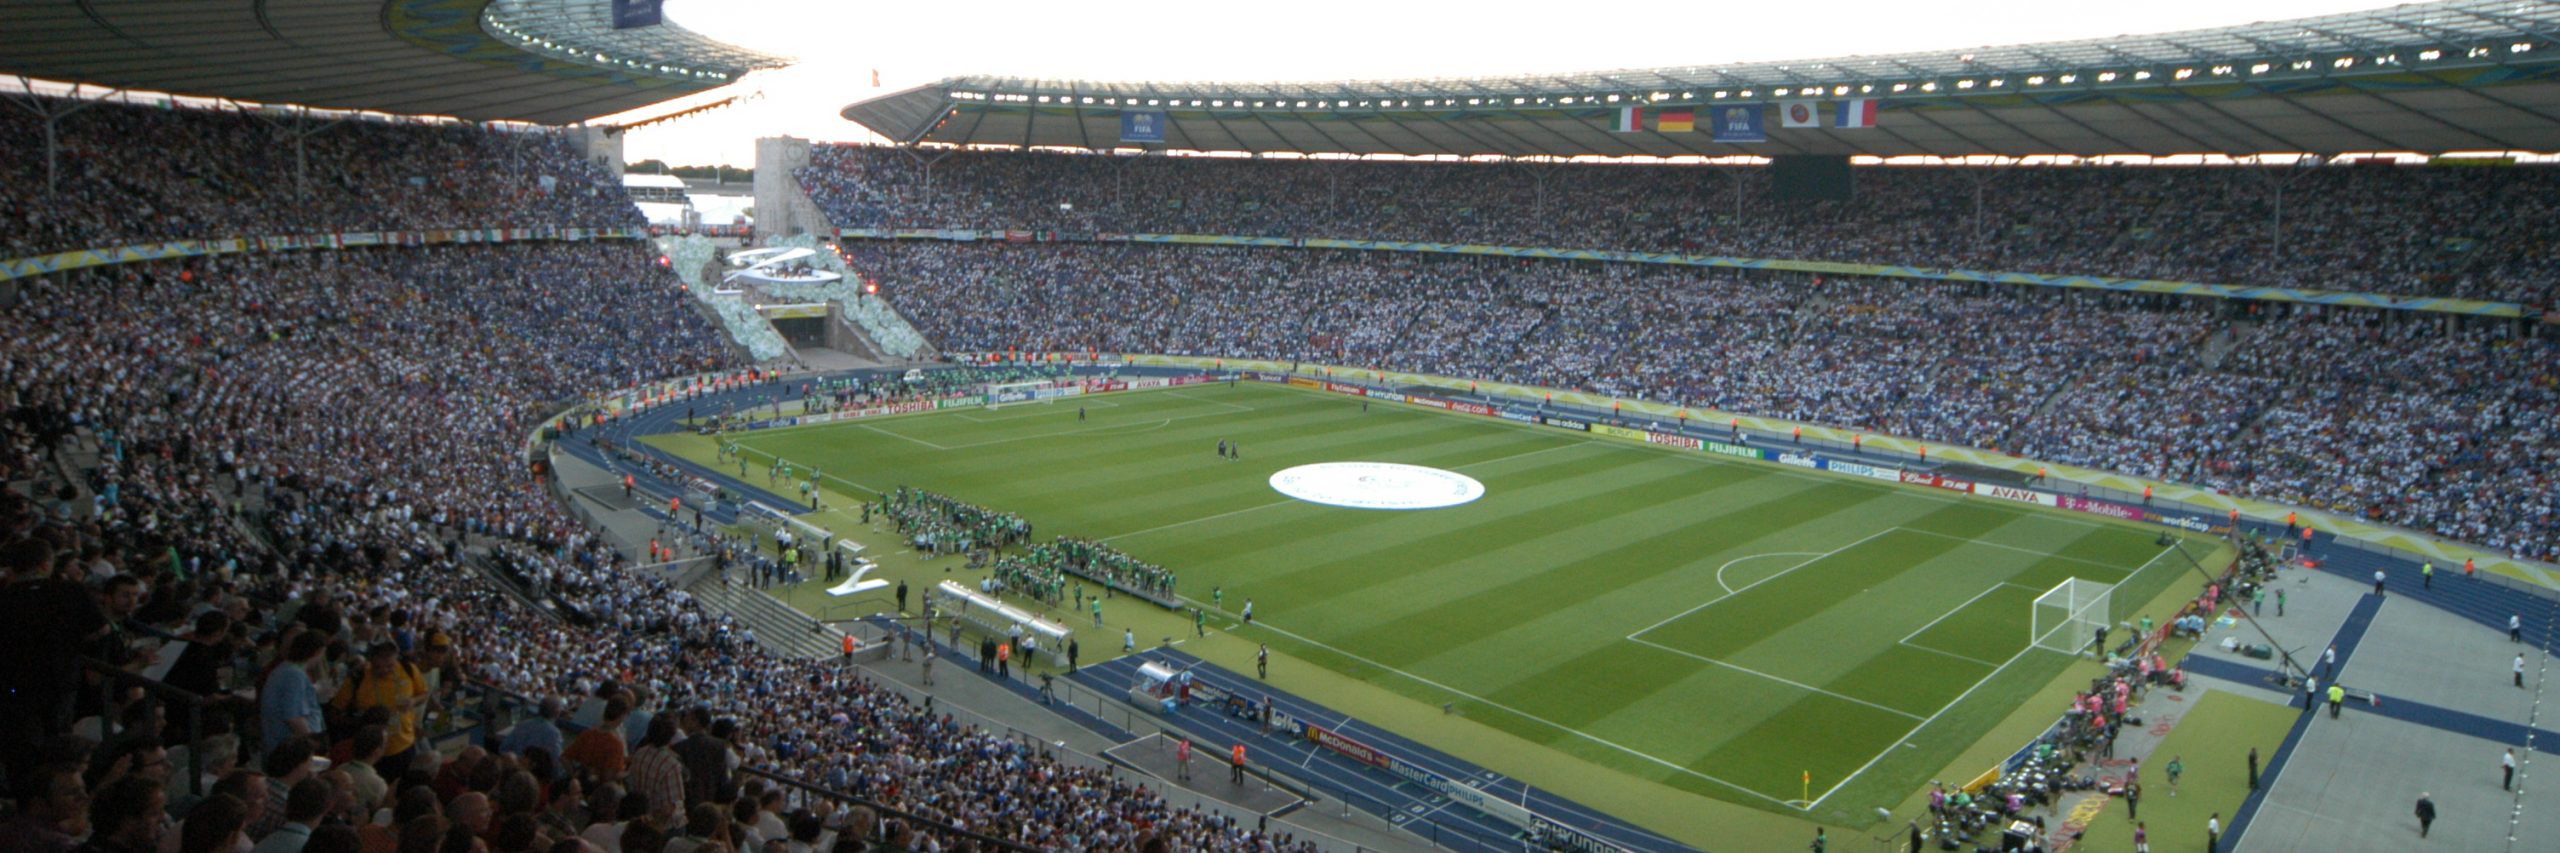 Blick in das gefüllte Olympiastadion Berlin beim Finale der WM 2006.